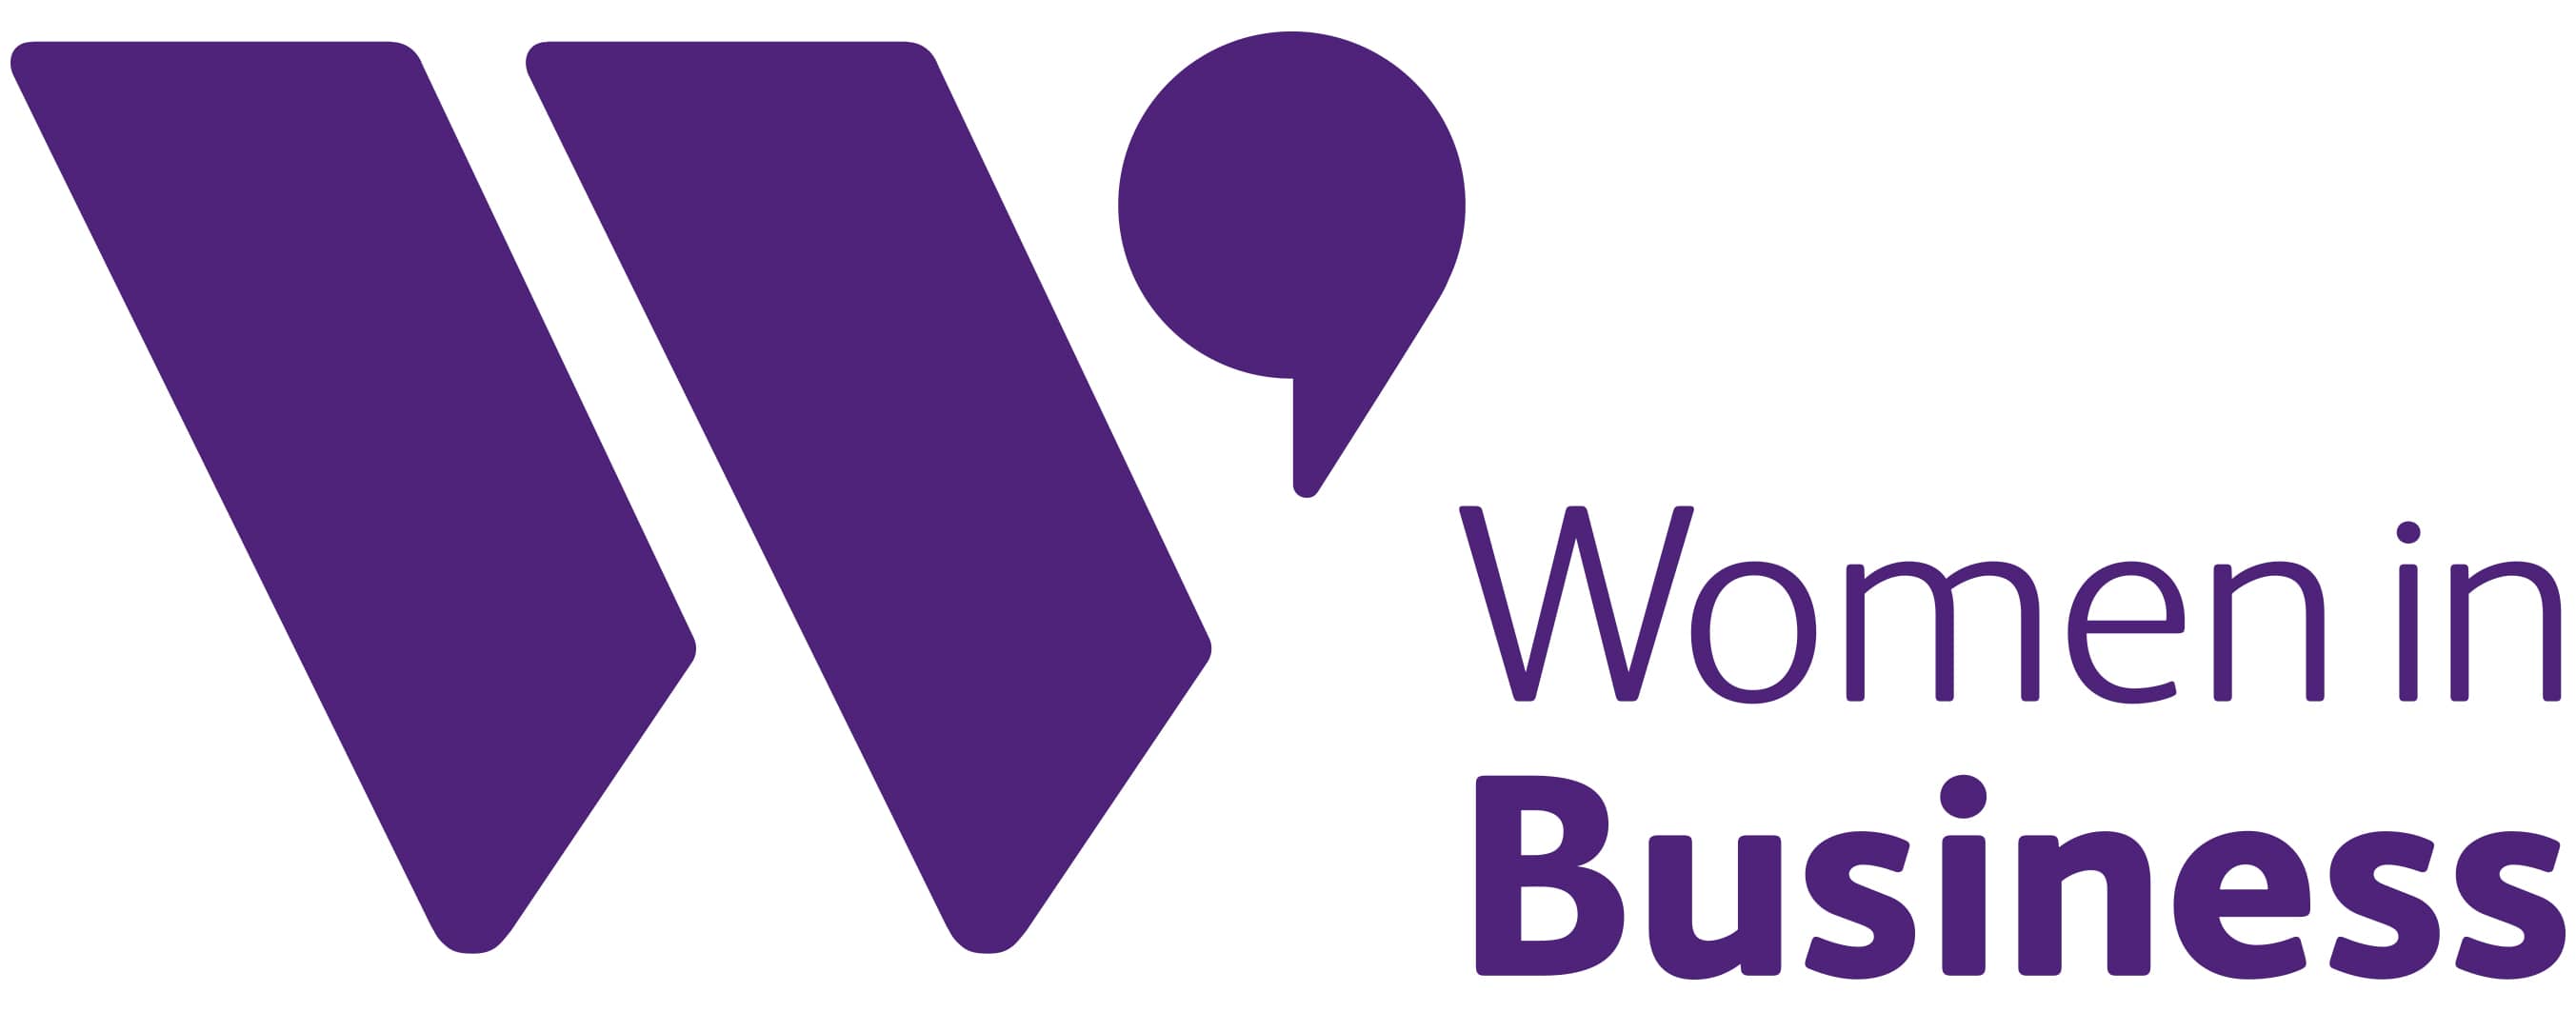 women-in-business-purple-landscape-logo-300-dpi.jpg